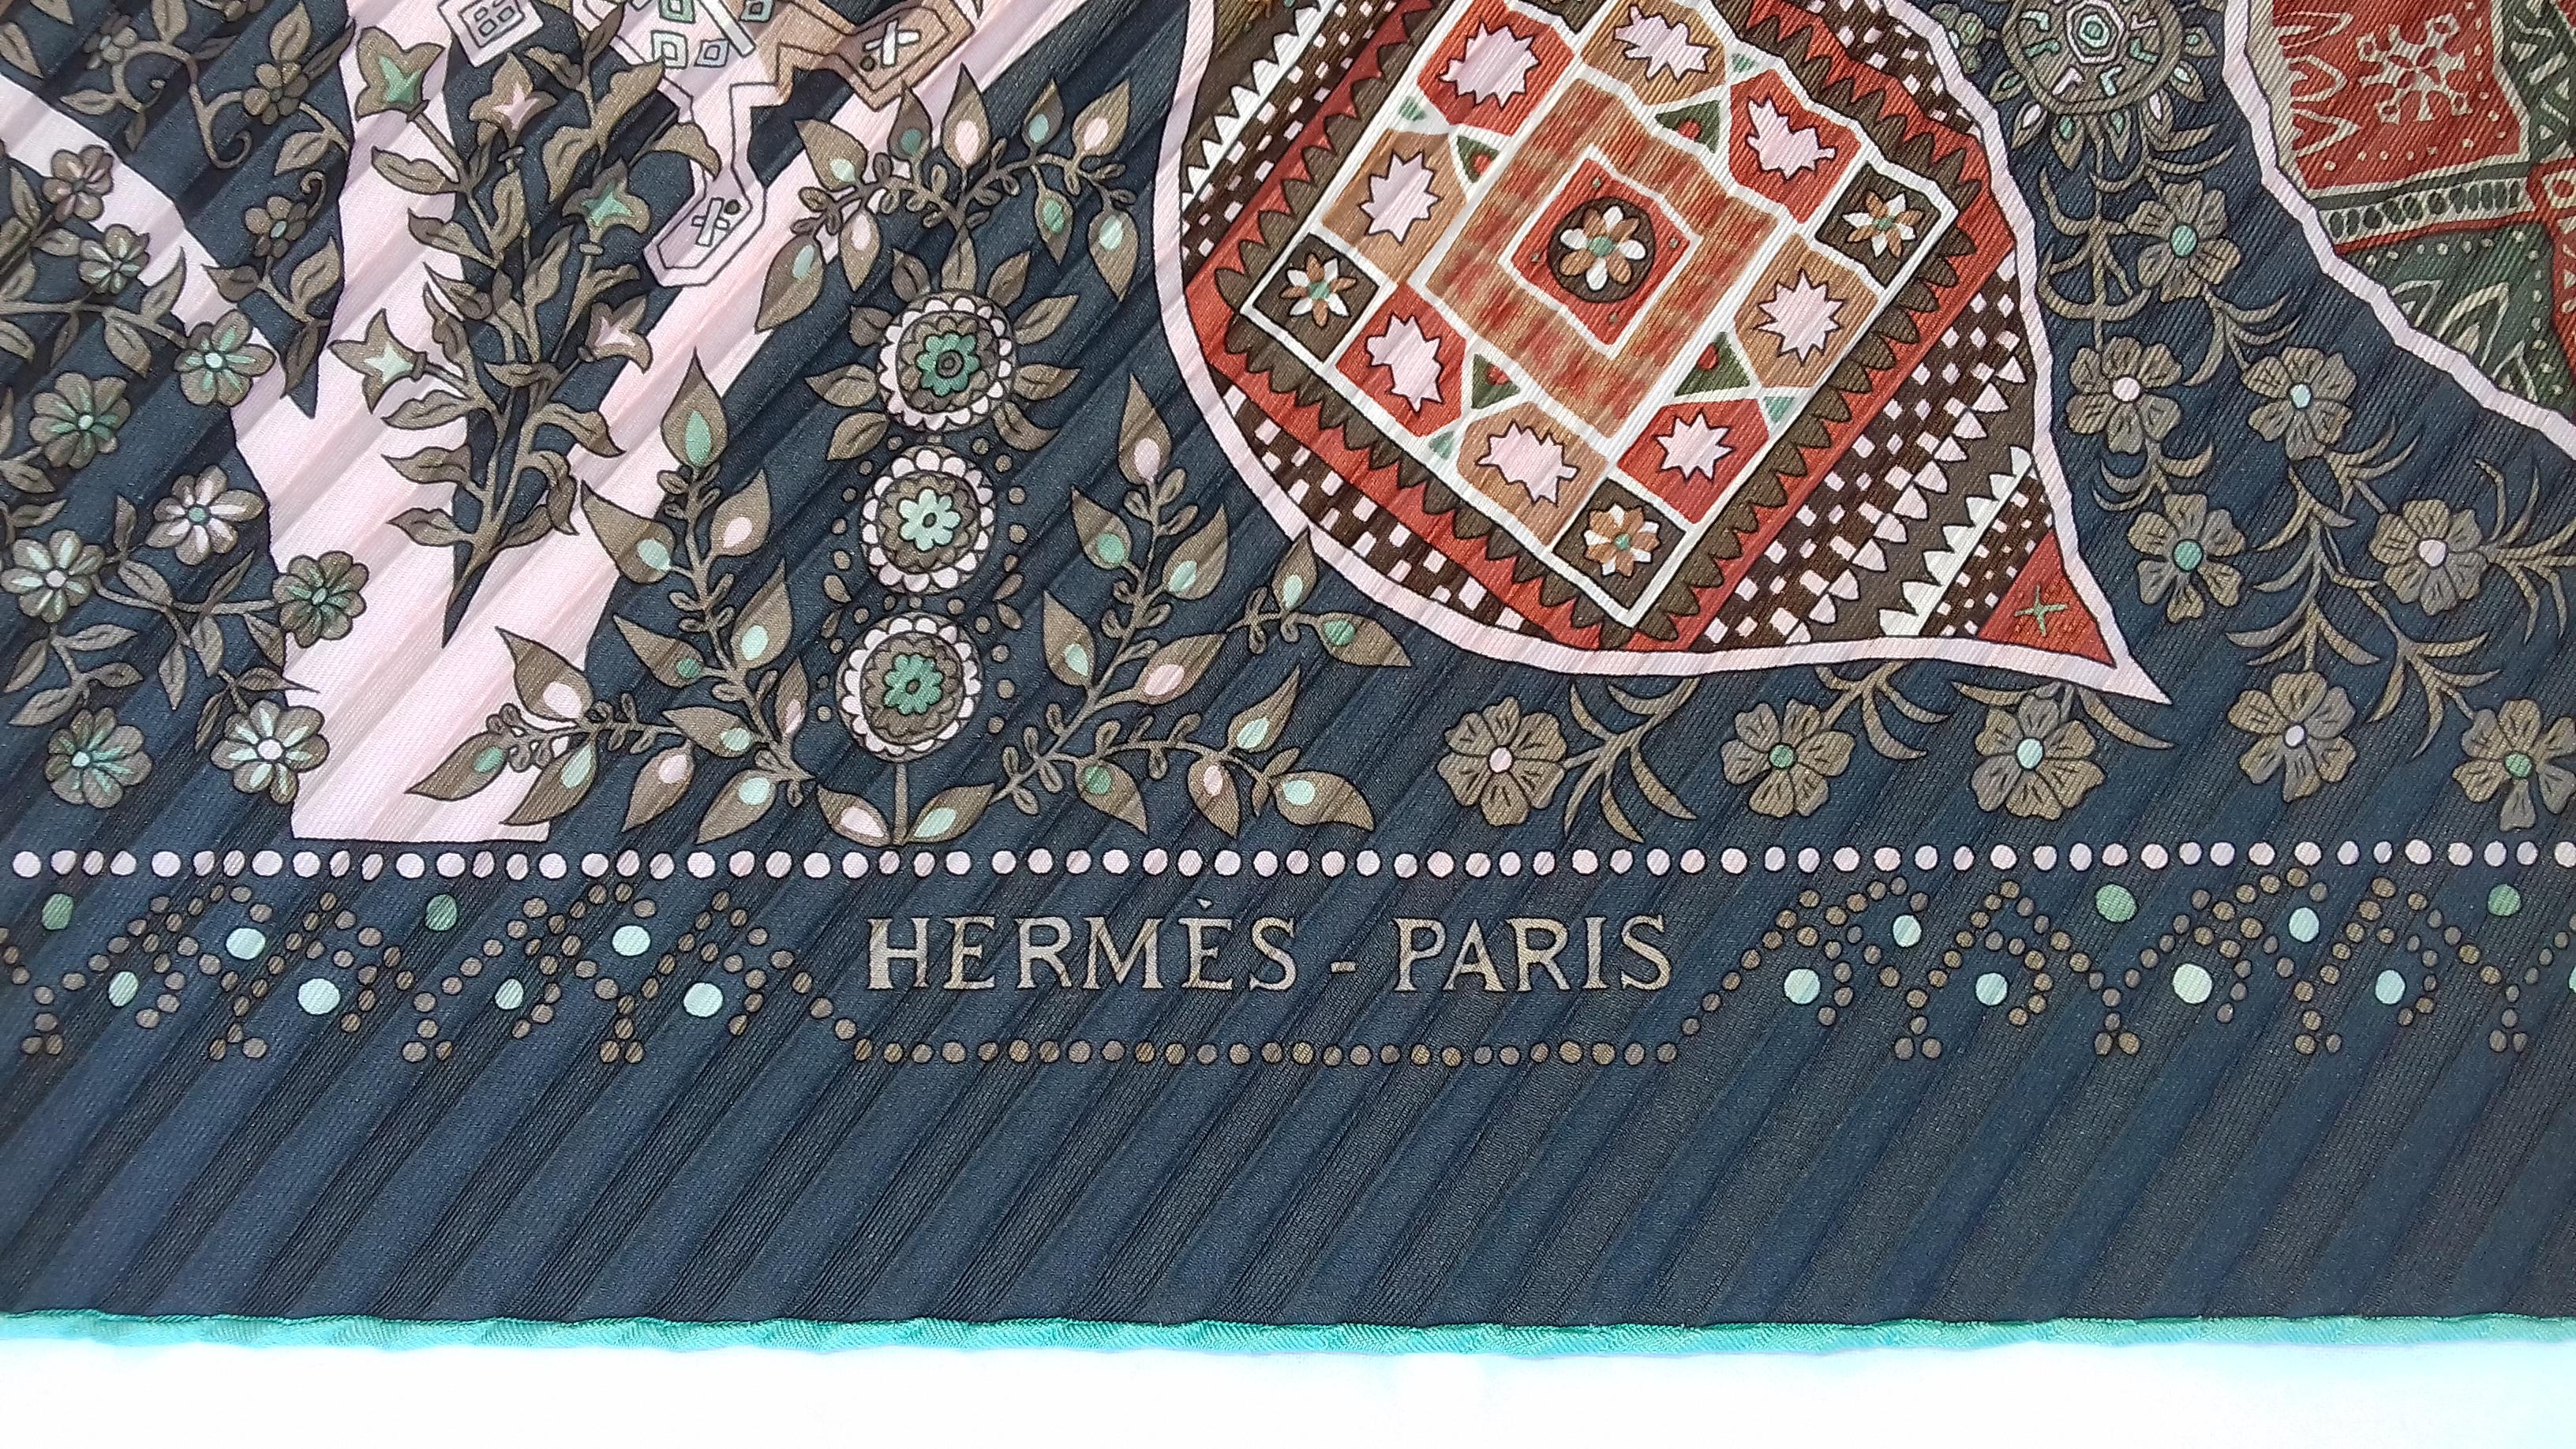 Hermès Pleated Silk Scarf Carré LArbre de Vie Christine Henry 2011 For Sale 9